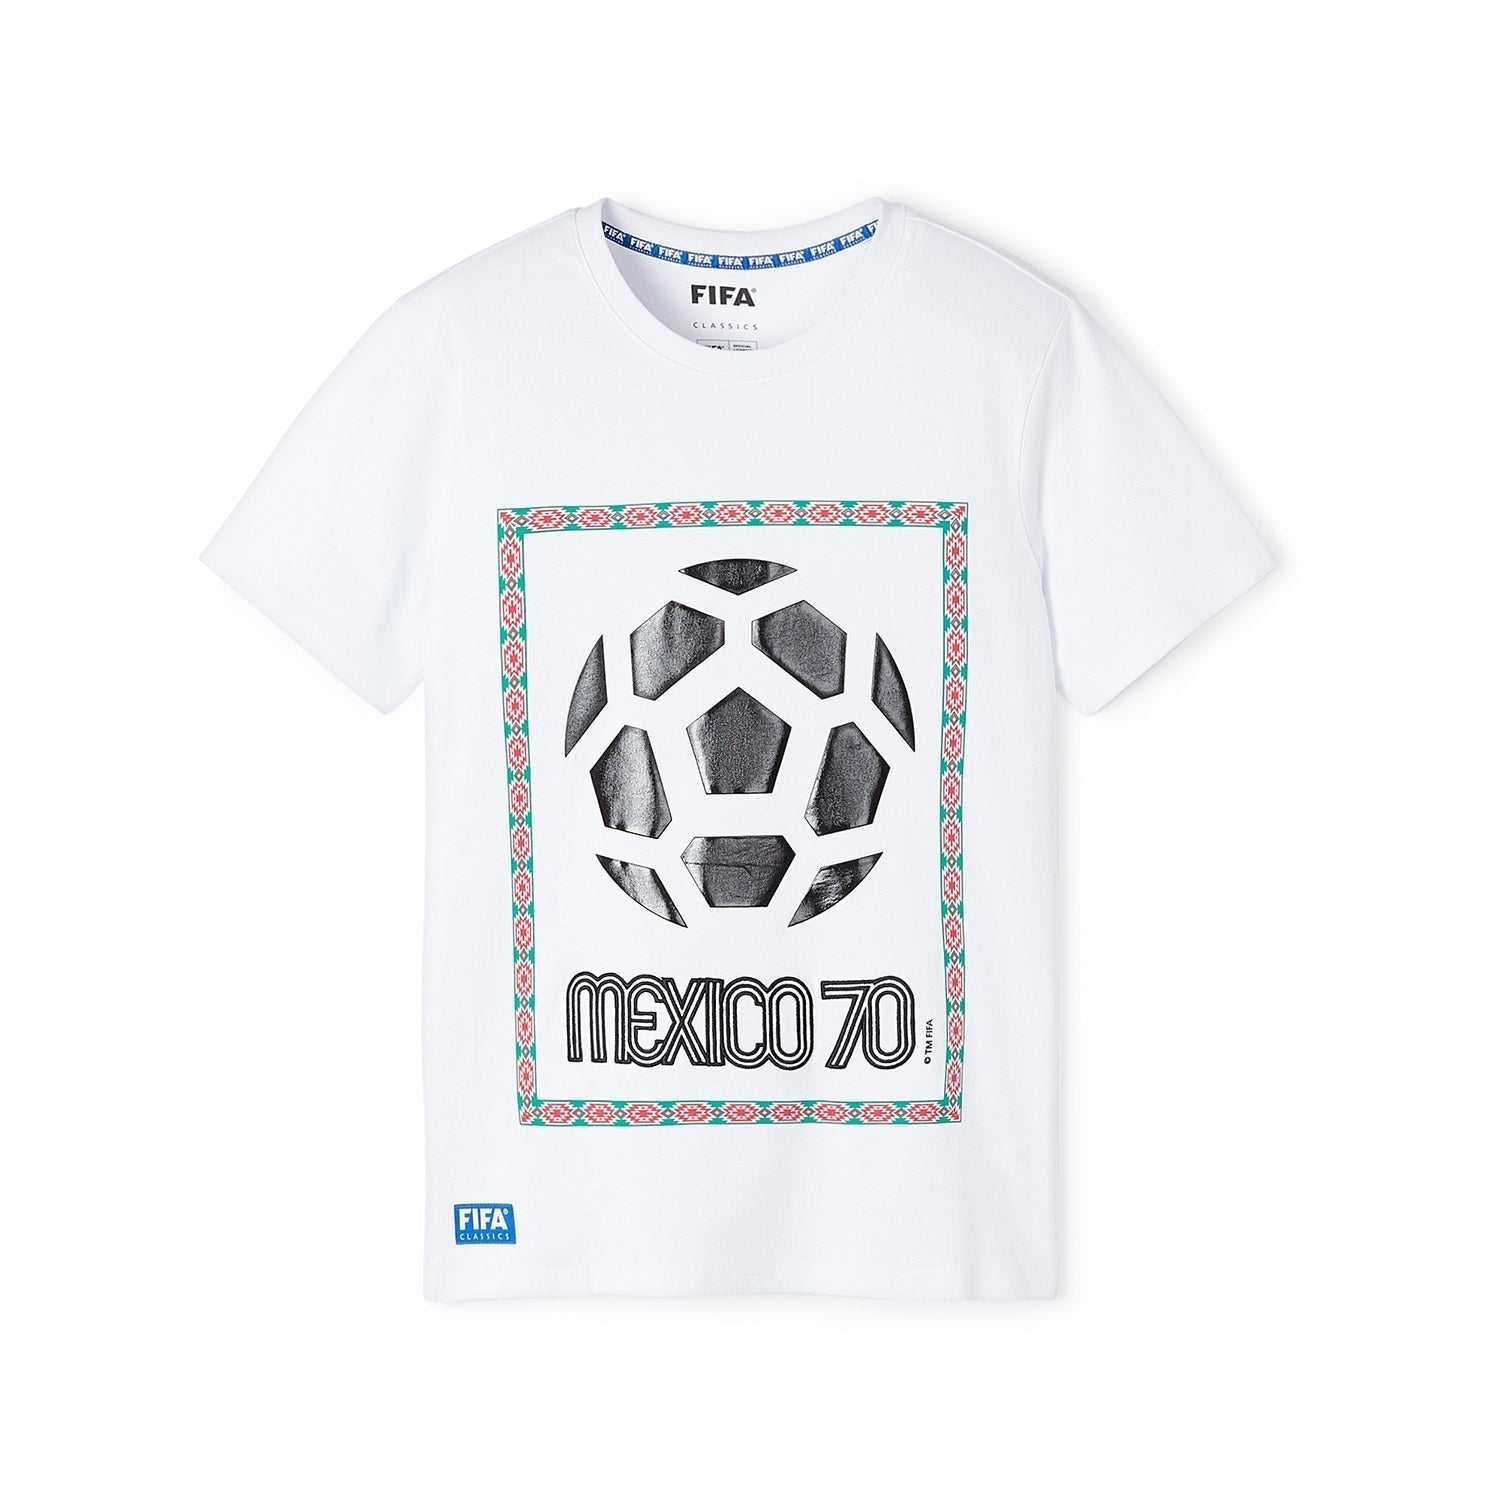 FIFA Classics Mexico '70 - Emblem Aztec T-Shirt